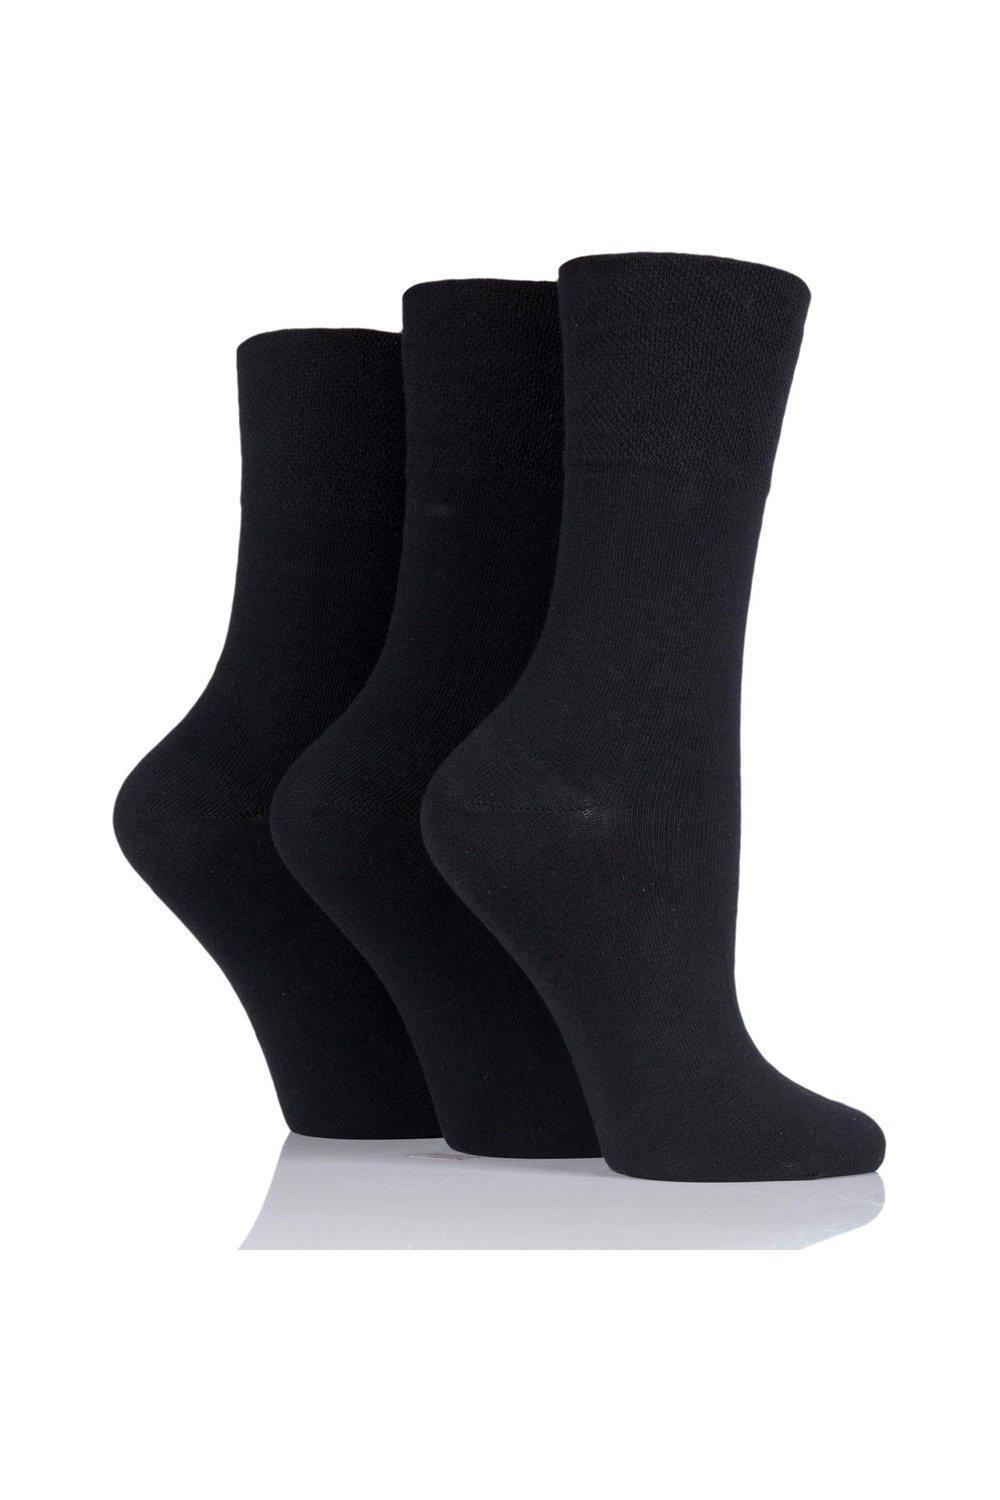 3 Pair Footnurse Gentle Grip Diabetic Socks